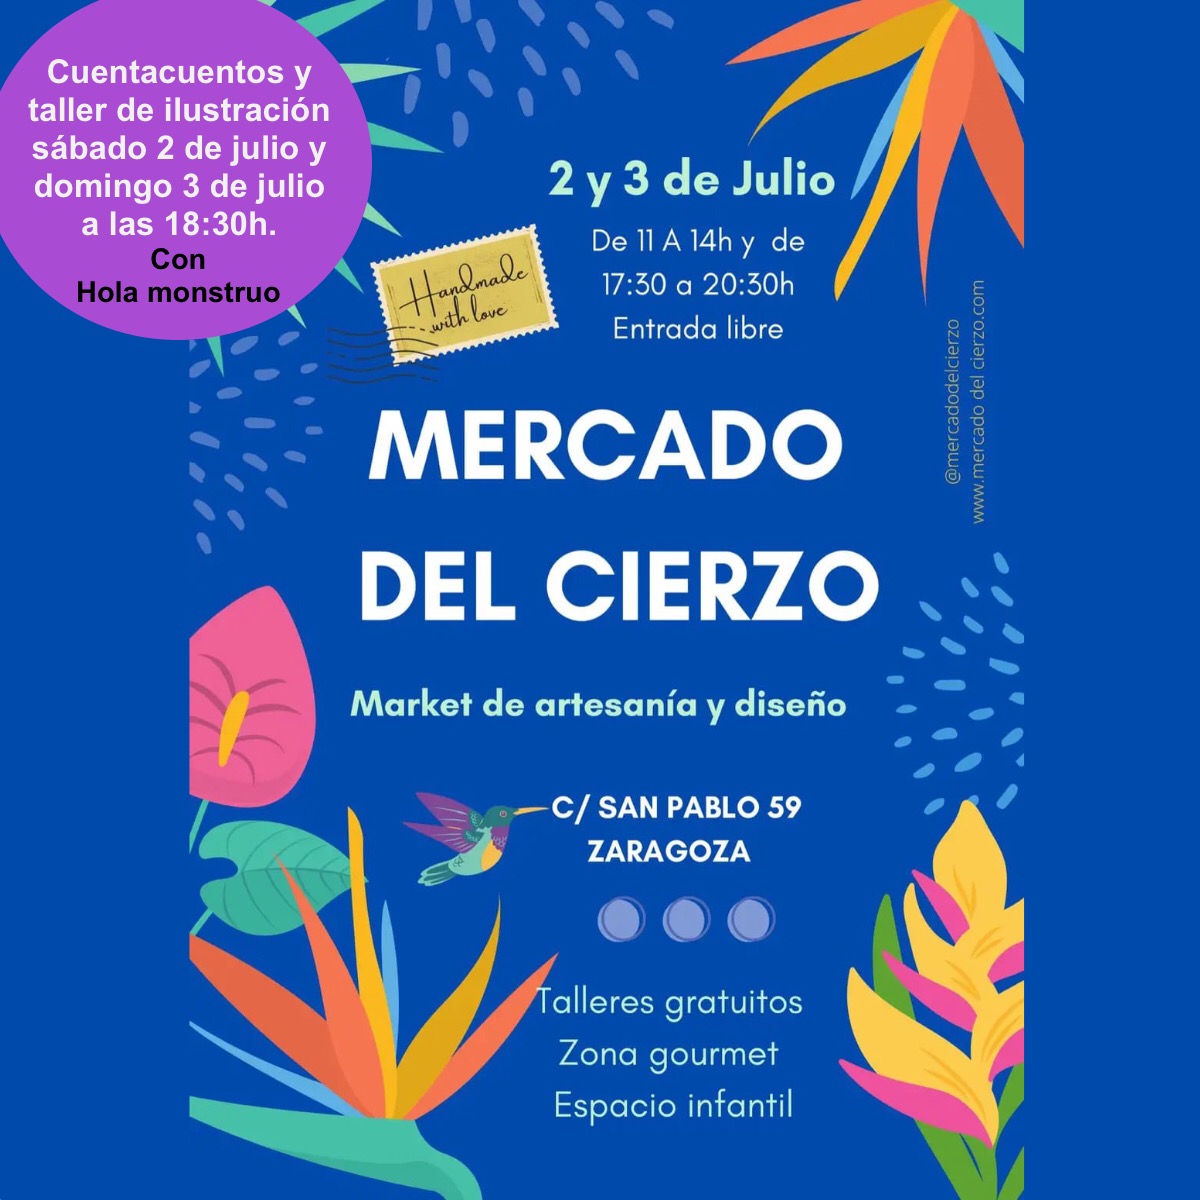 Mercado del Cierzo, cuentacuentos y talleres de ilustración en Zaragoza